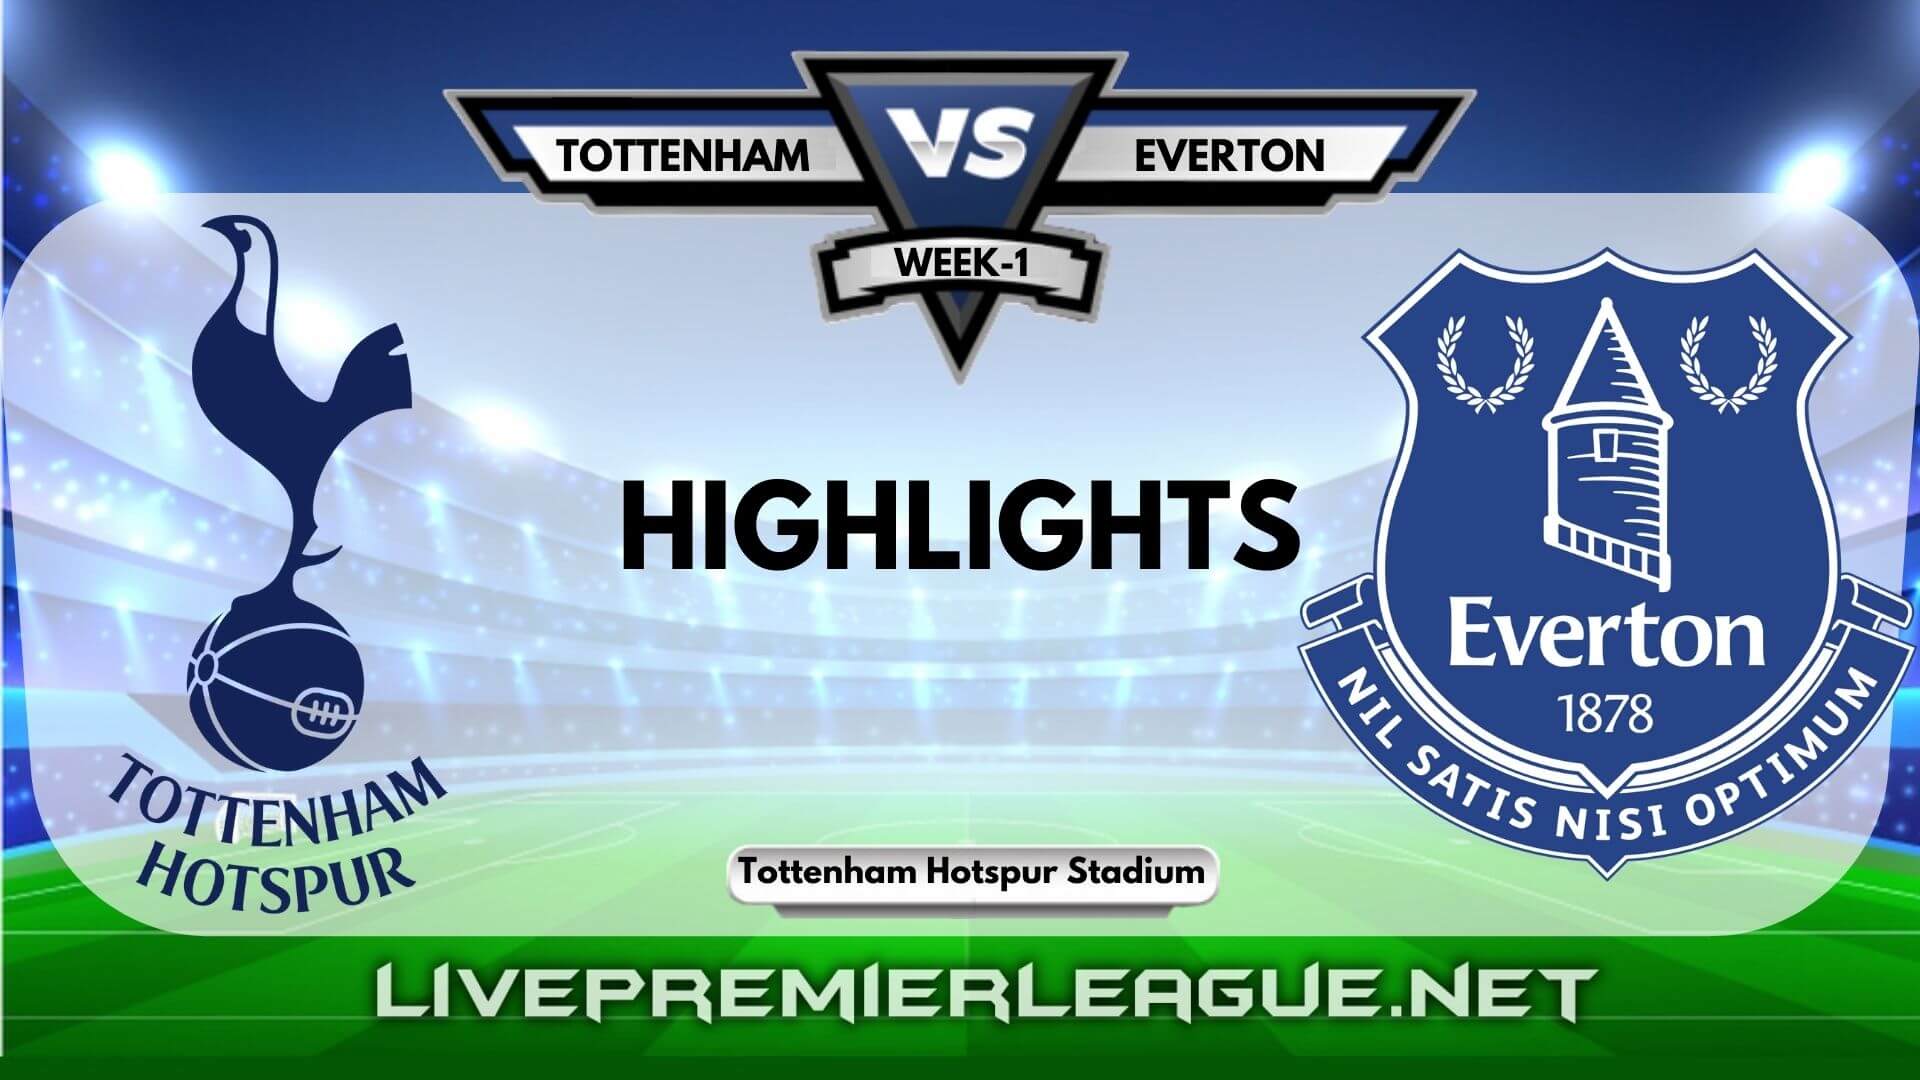 Tottenham Hotspur Vs Everton Highlights 2020 EPL Week 1